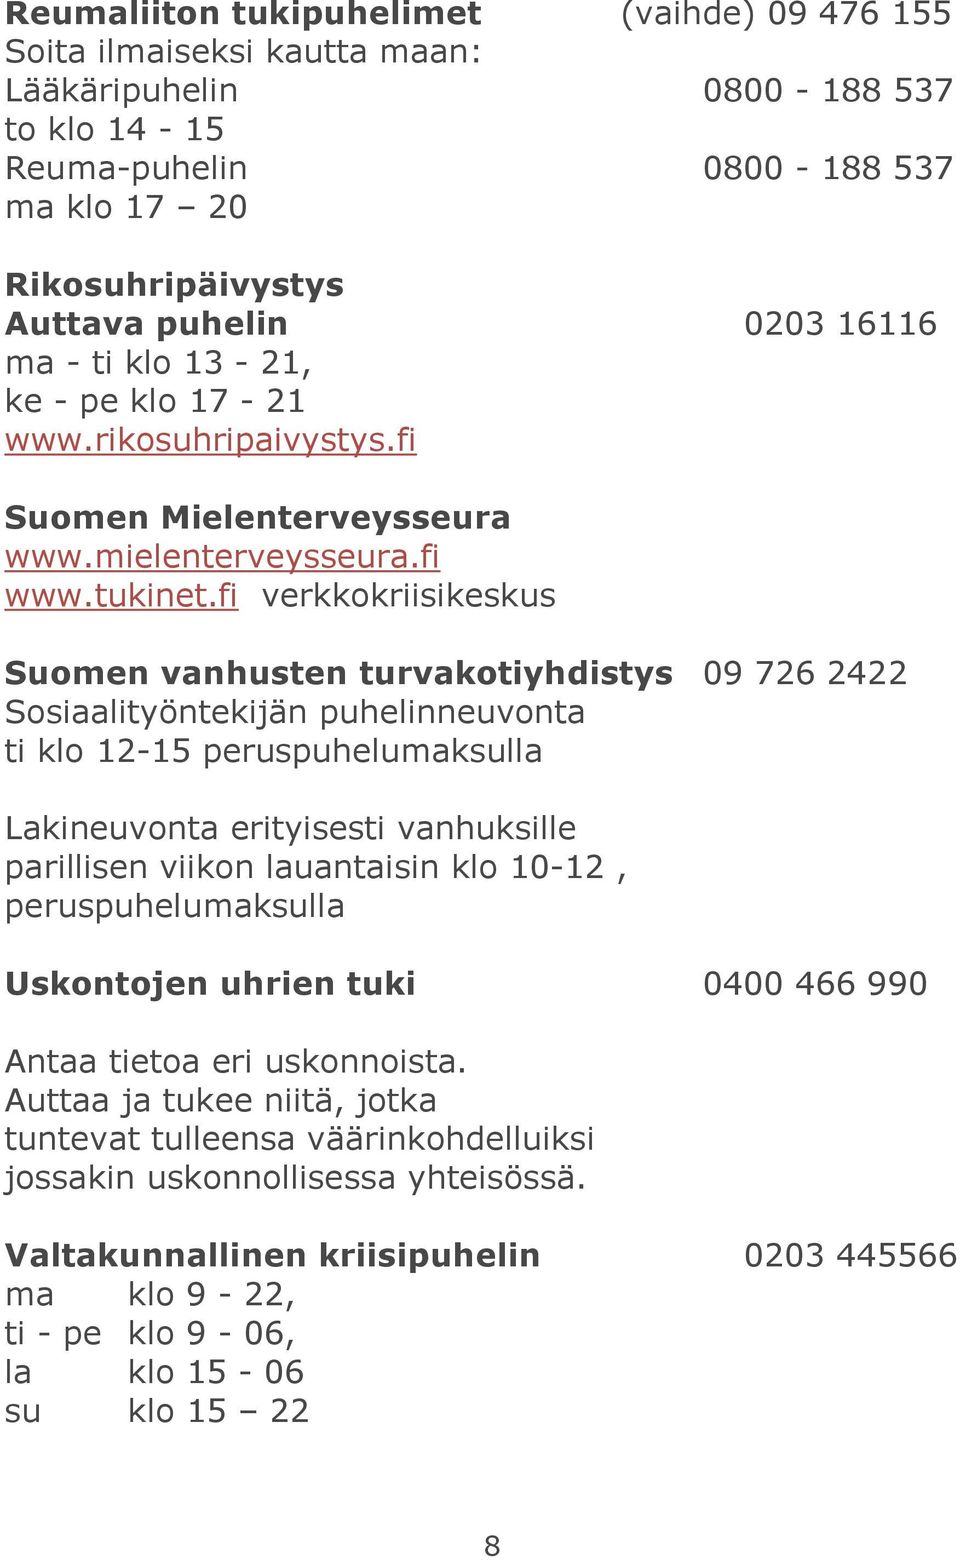 fi verkkokriisikeskus Suomen vanhusten turvakotiyhdistys 09 726 2422 Sosiaalityöntekijän puhelinneuvonta ti klo 12-15 peruspuhelumaksulla Lakineuvonta erityisesti vanhuksille parillisen viikon